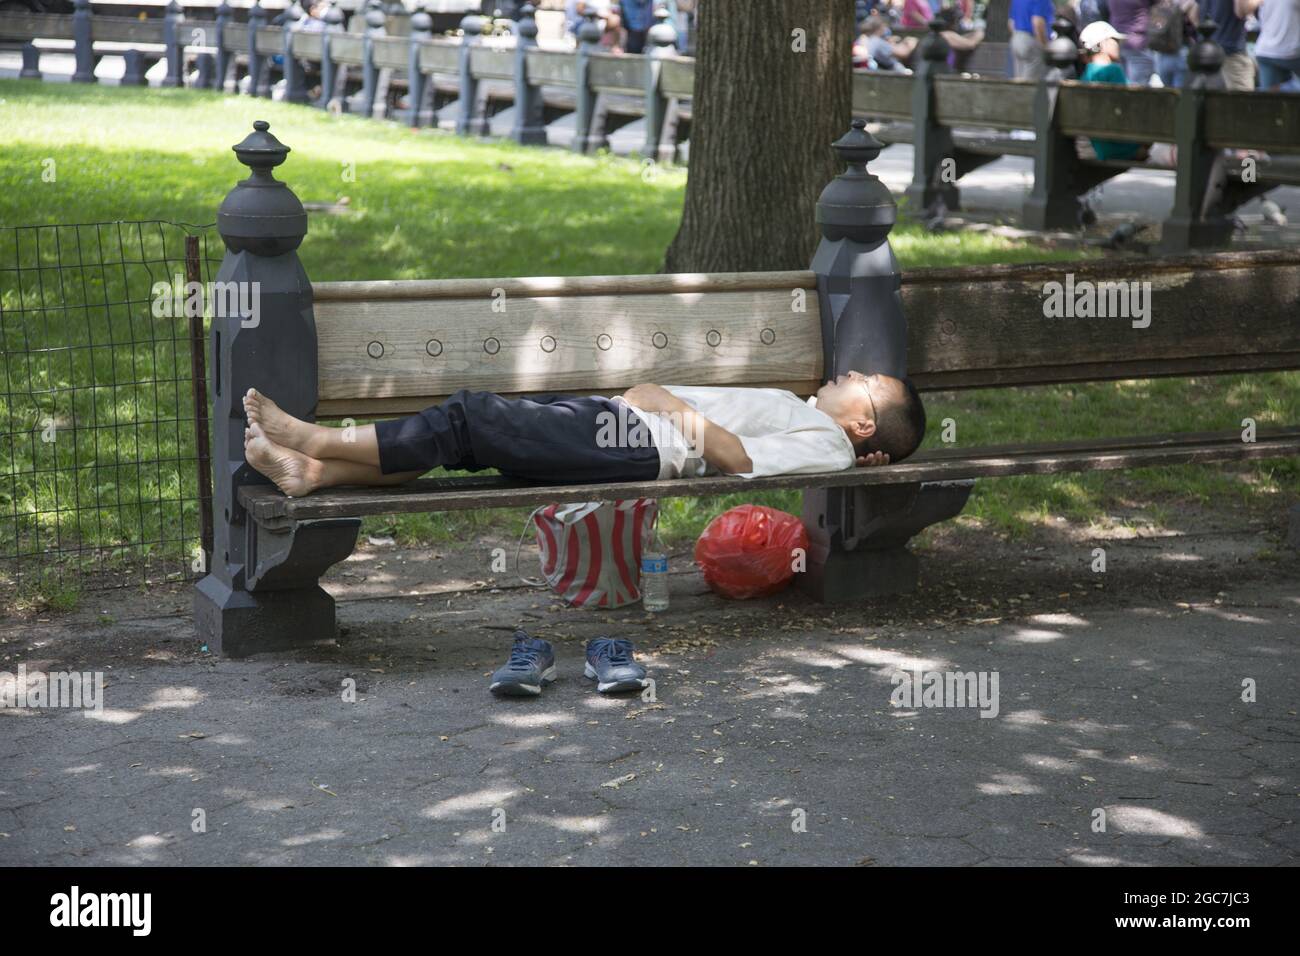 An einem warmen Sommertag im Central Park, New York City, macht der Mann einen Schlummer. Stockfoto